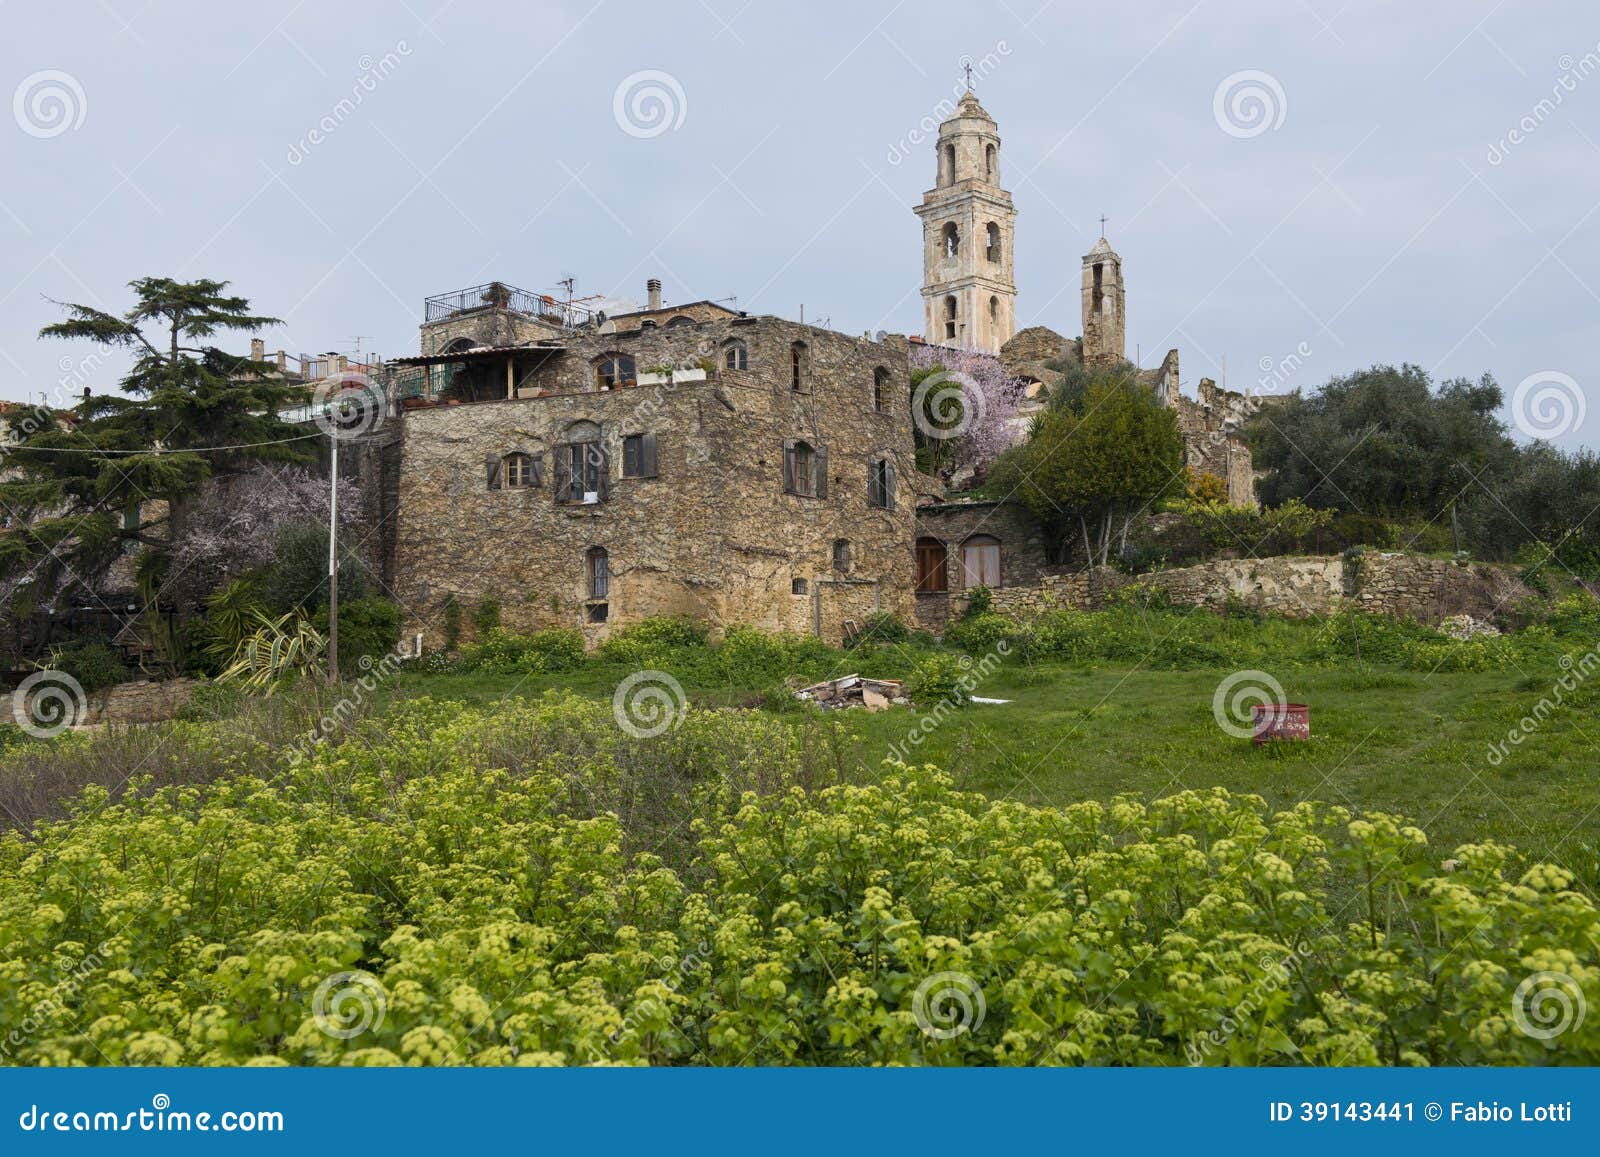 the ancient village of bussana vecchia